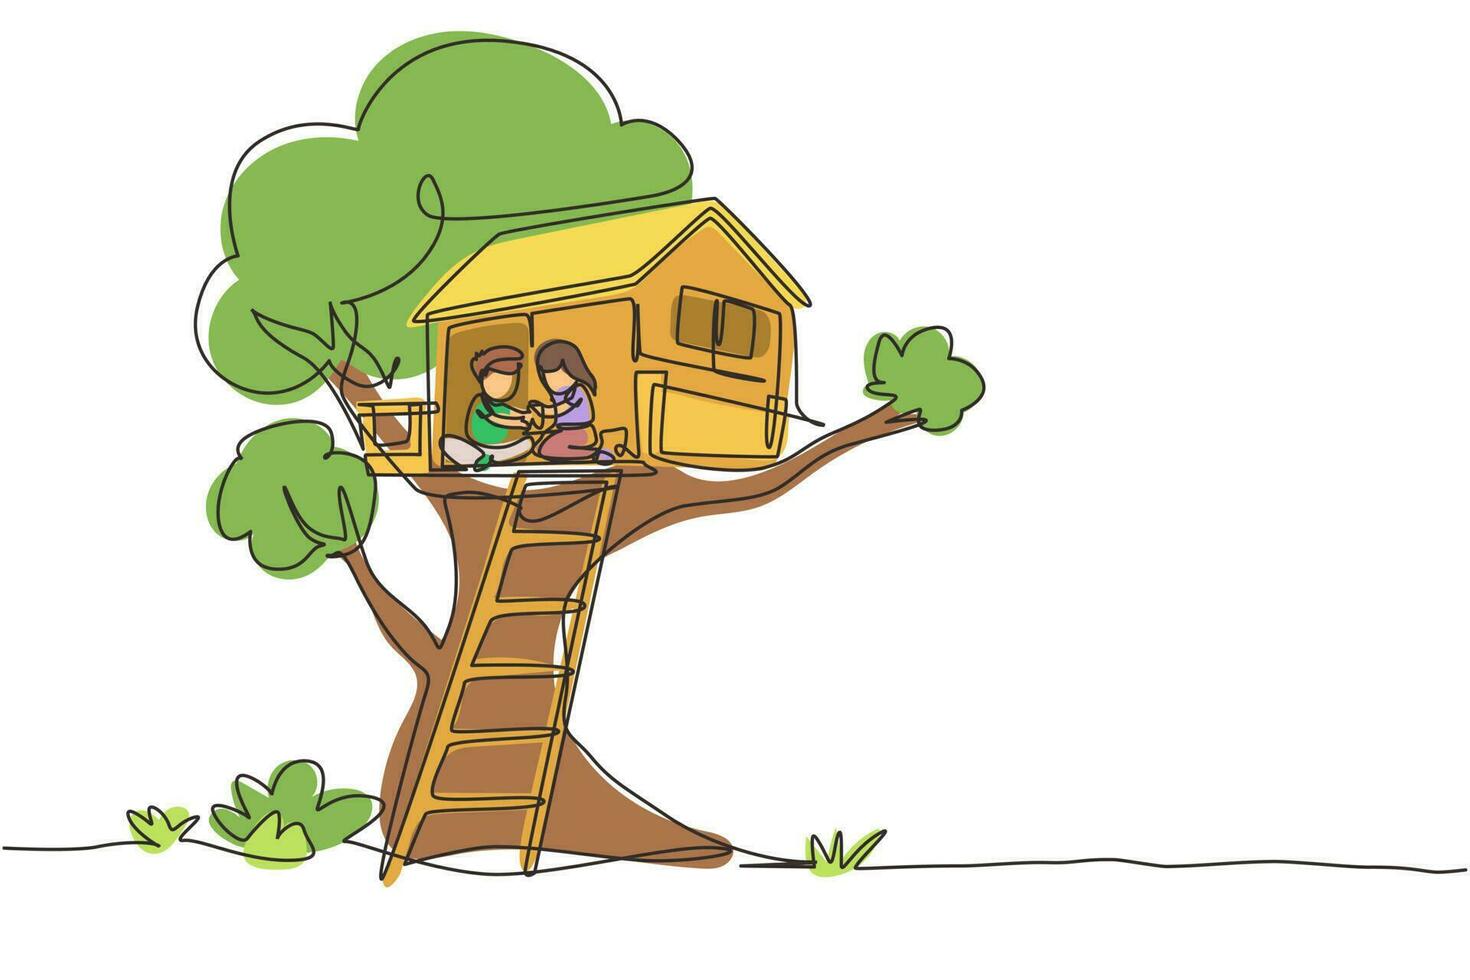 disegno a linea continua singola bambino sulla casa sull'albero, ragazzino e ragazza che giocano nel parco giochi per bambini, casa sull'albero con scala di legno, posto per giochi per bambini in estate. vettore di progettazione grafica a una linea